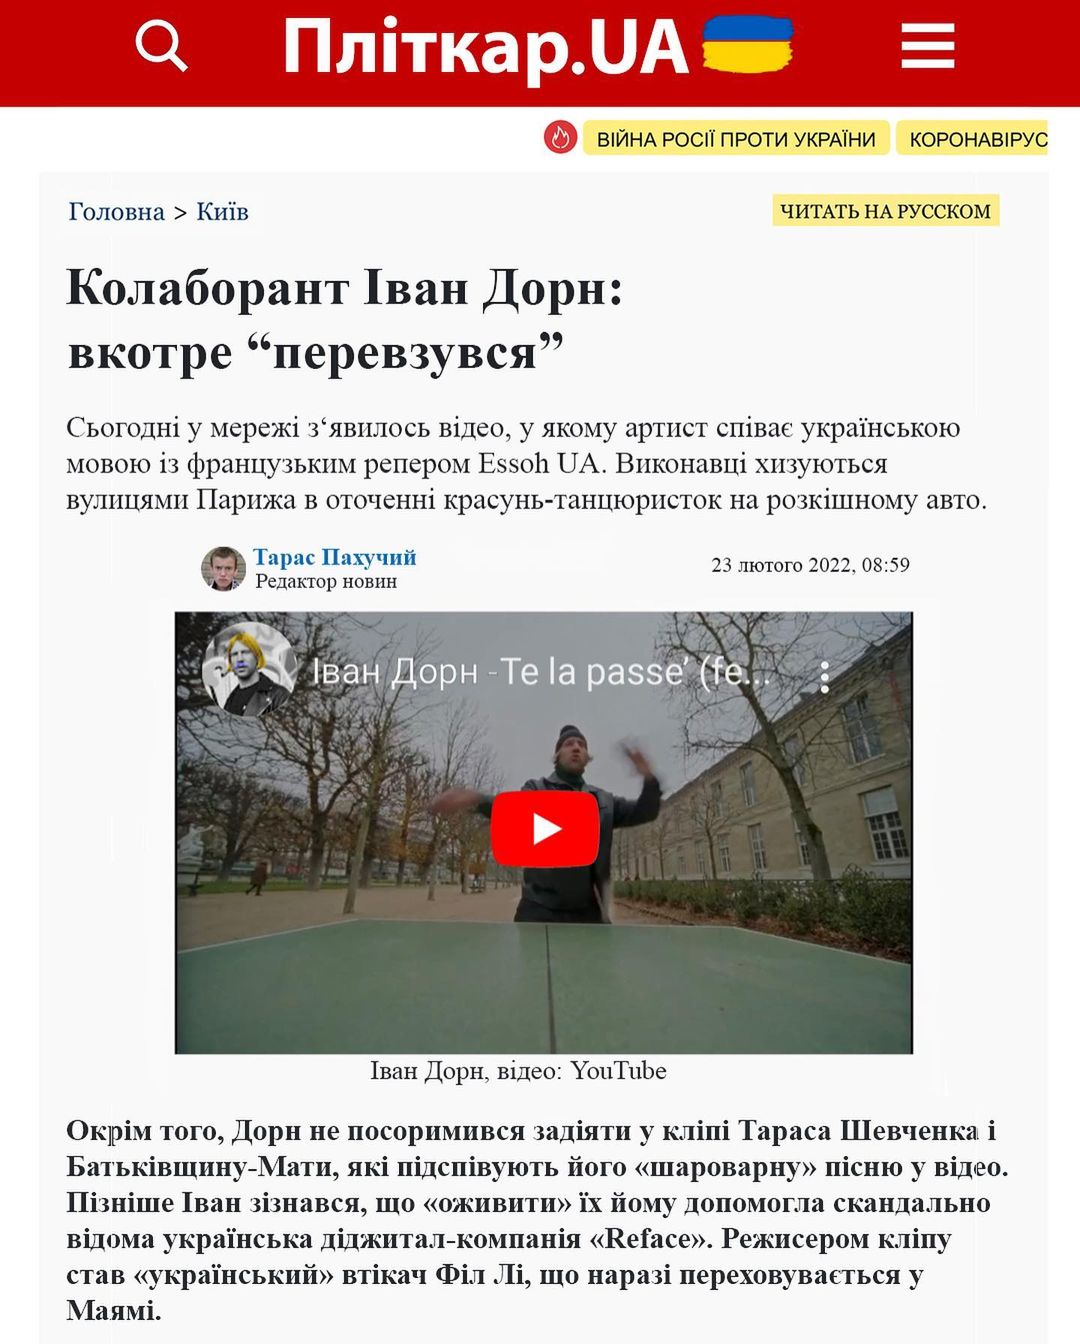 «Переобулся»: Иван Дорн выпустил клип в ответ на скандальную статью